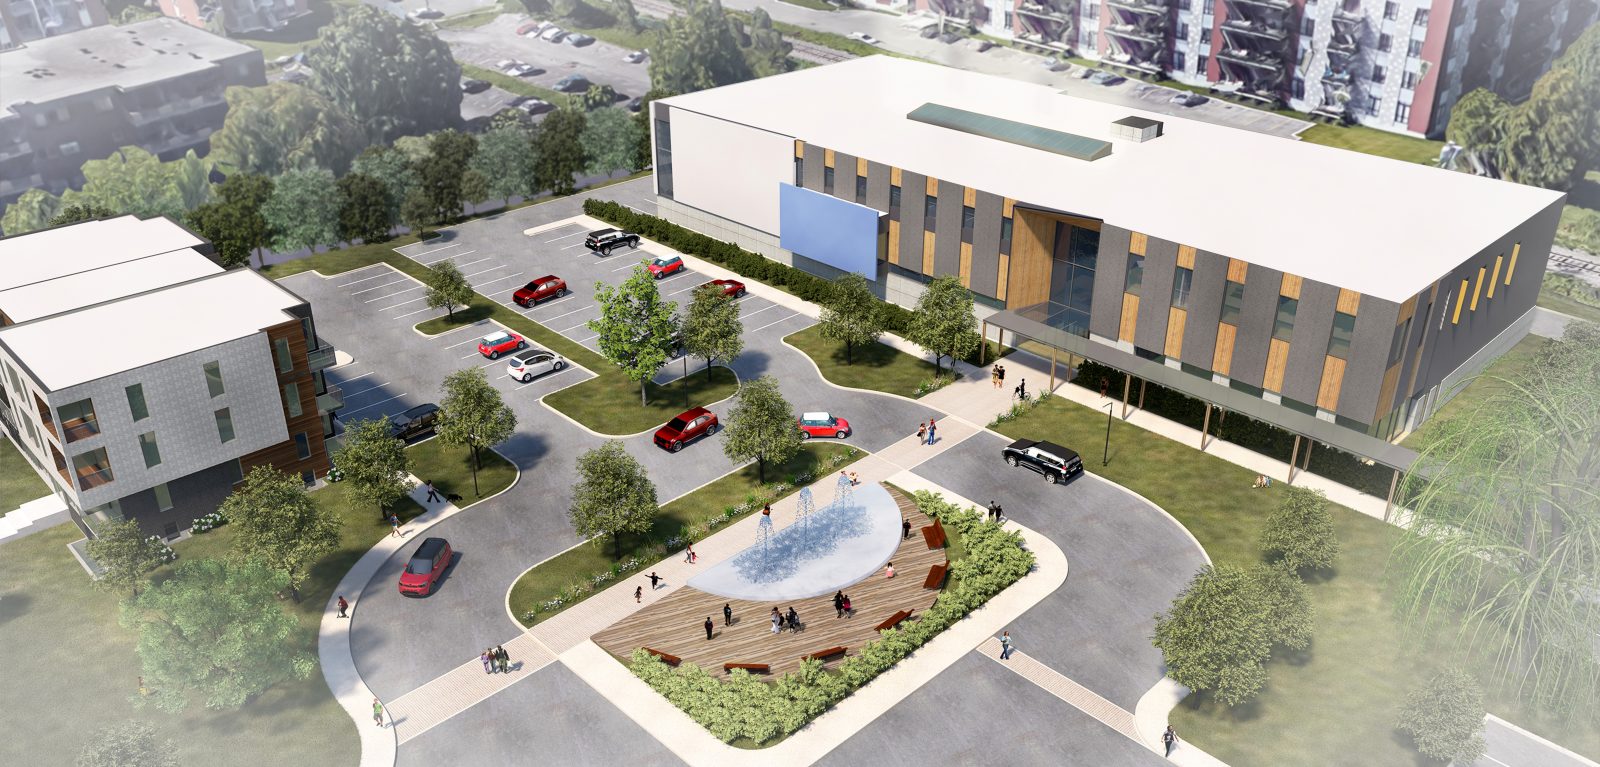 Le nouveau Centre multifonctionnel sera le plus grand projet public de l’histoire de Varennes